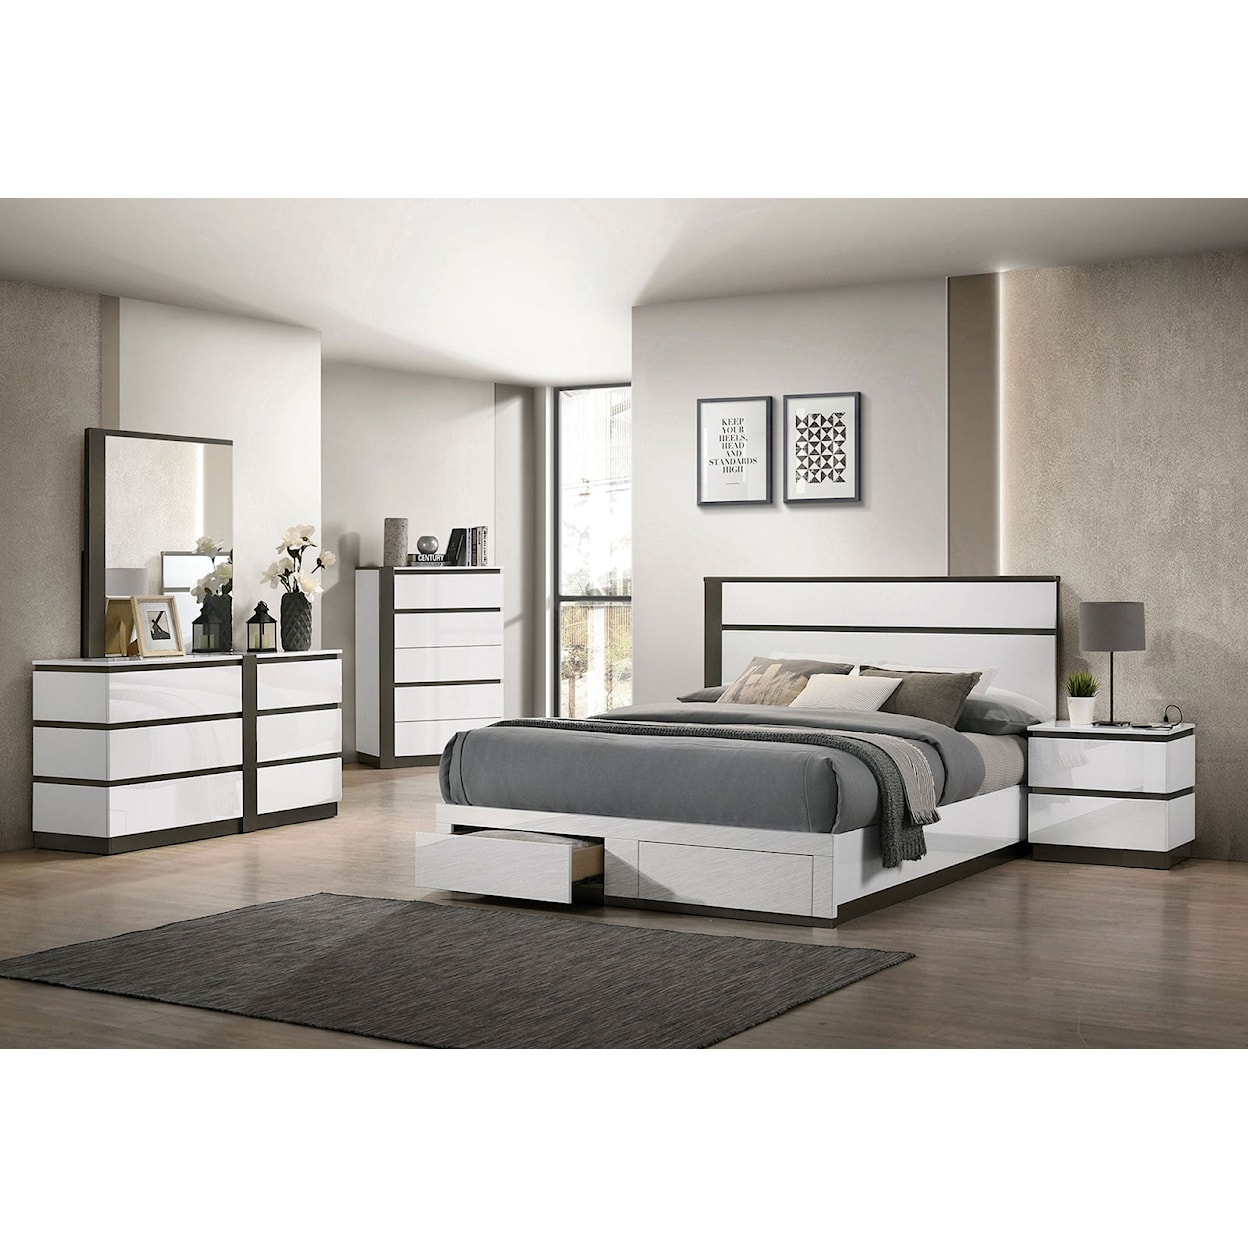 Furniture of America Birsfelden 4-Piece Queen Bedroom Set Footboard Storage